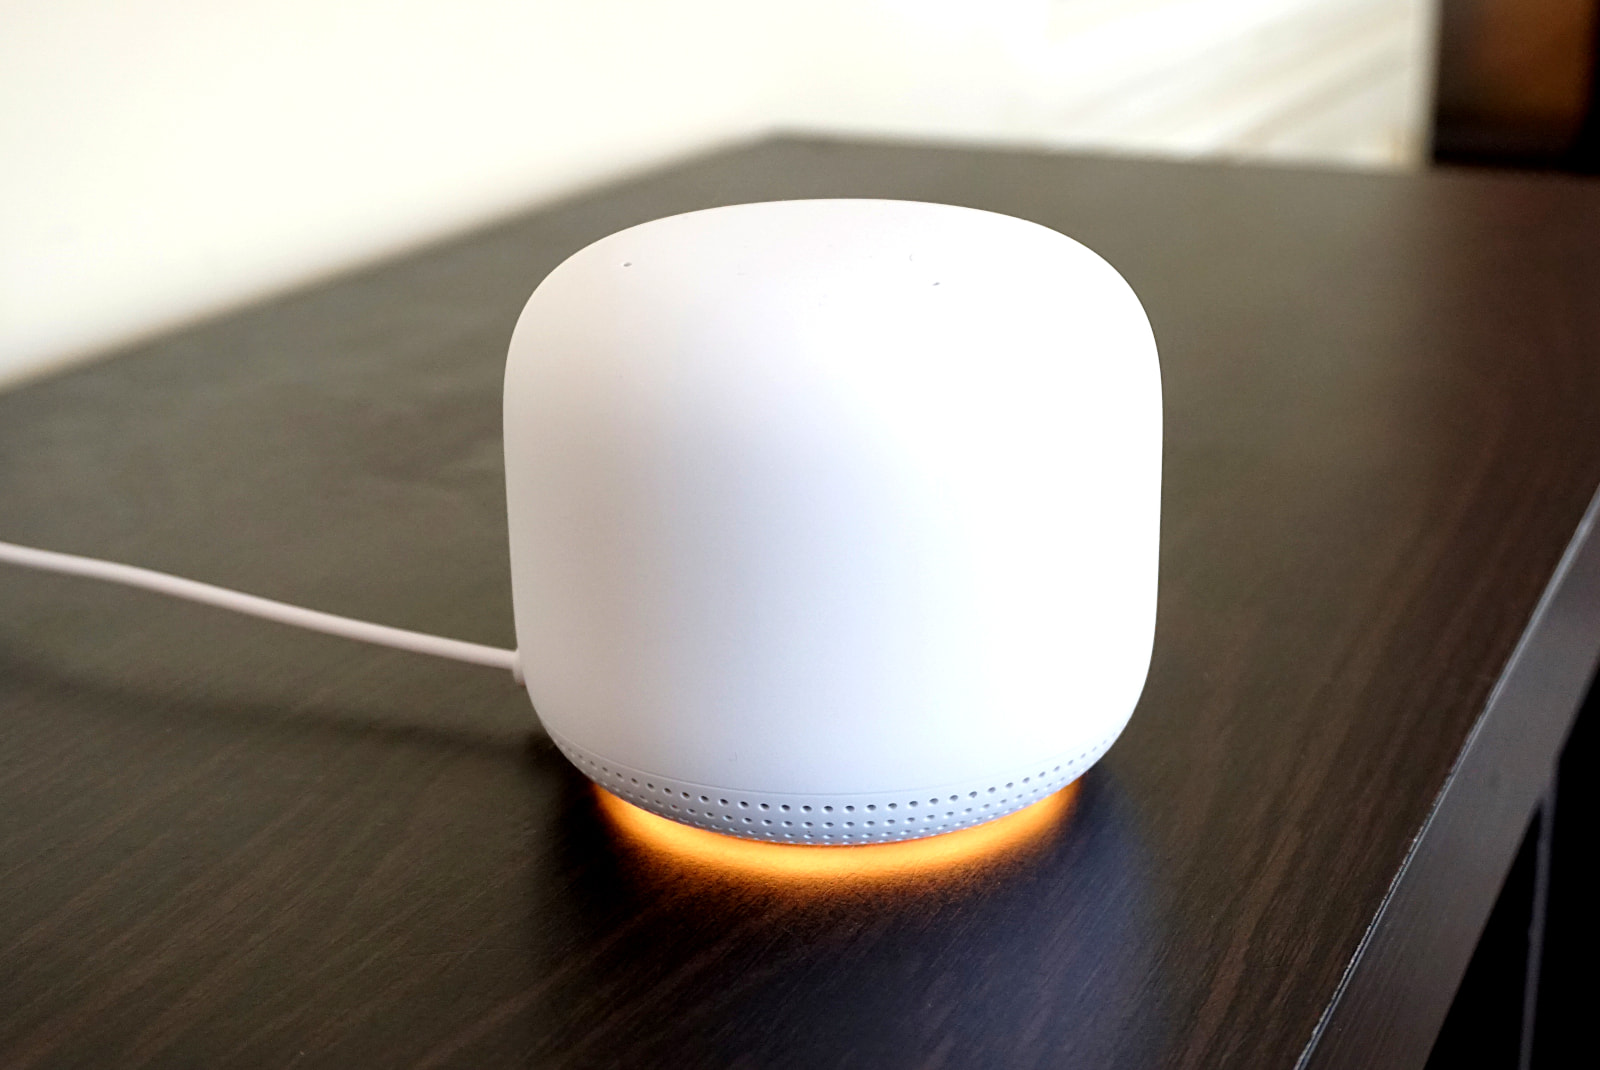 Google Nest Wifi with LED ring illuminated